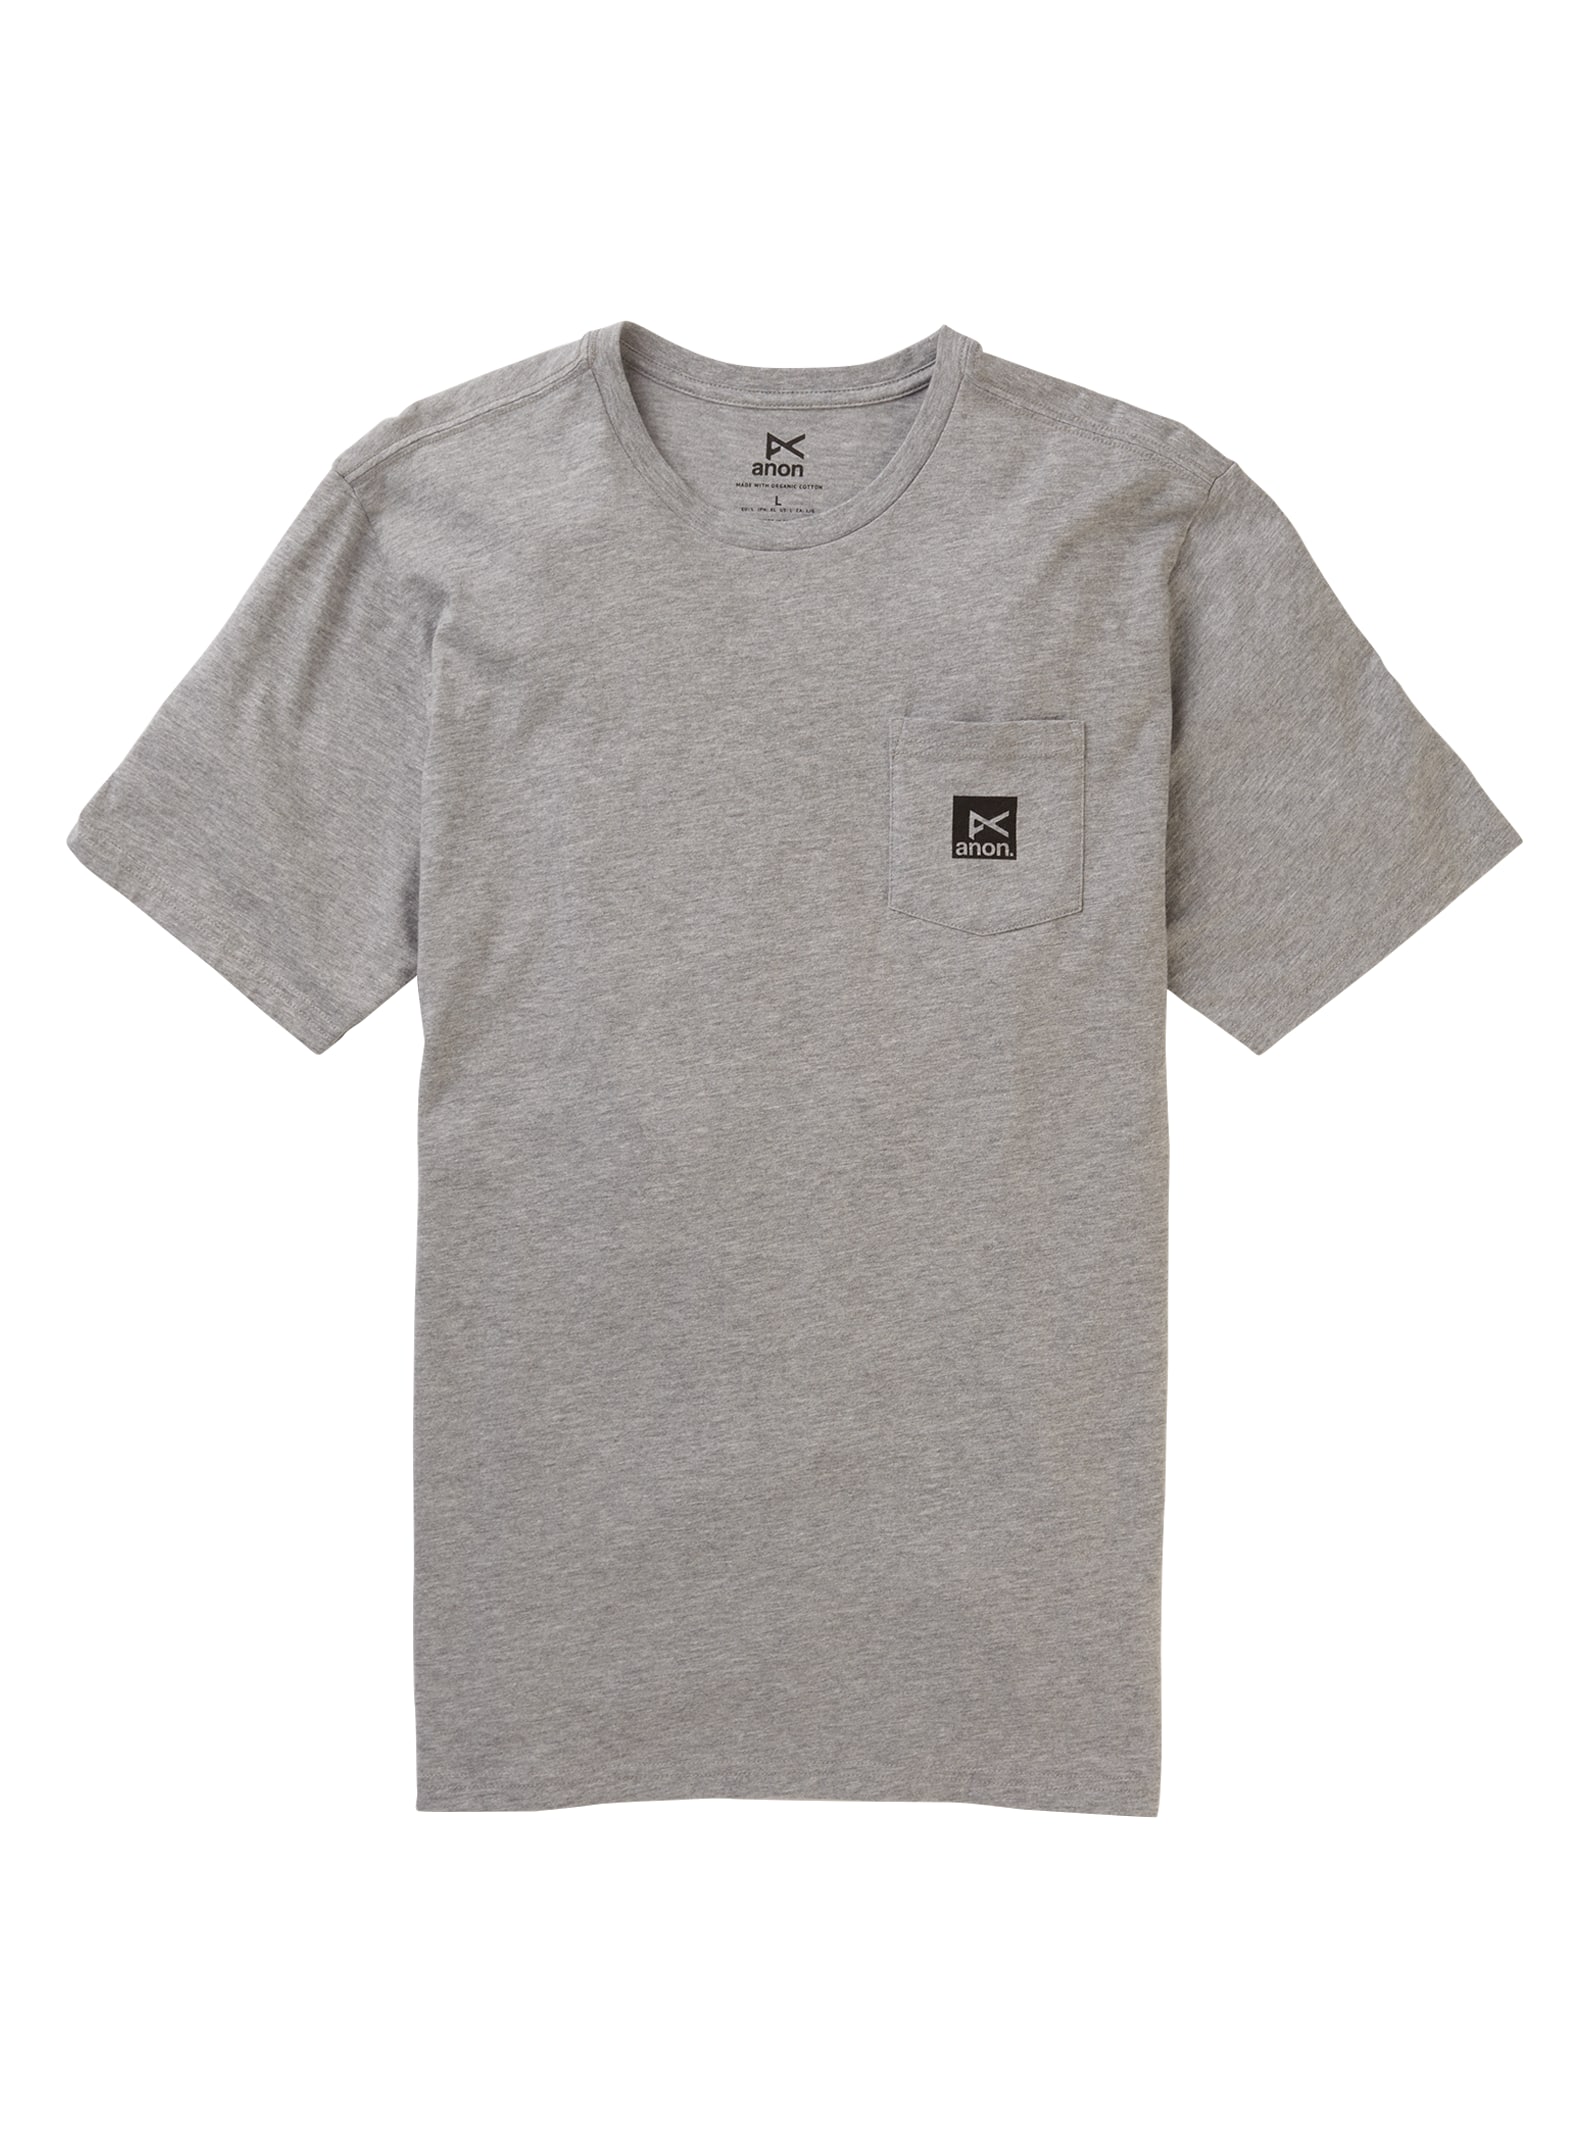 Anon Short Sleeve Pocket T-Shirt, Gray Heather, S